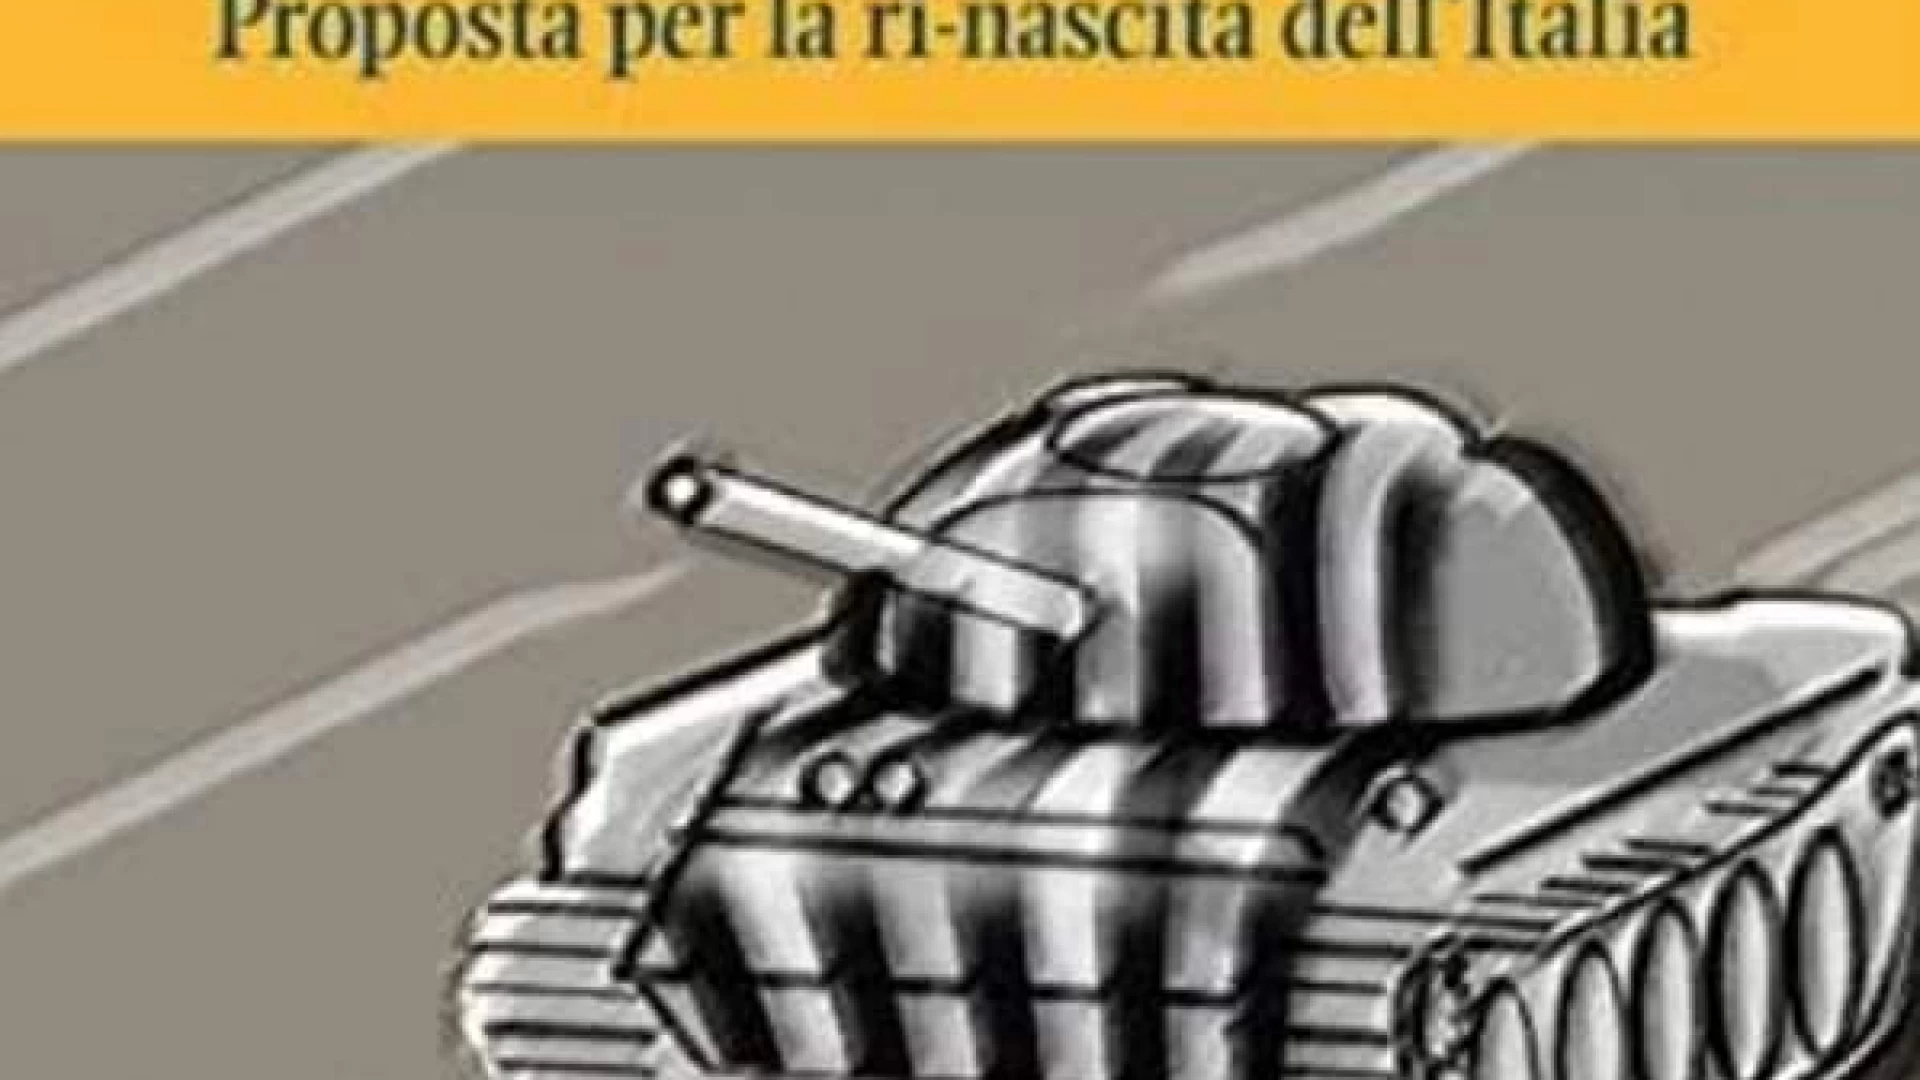 “Aboliamo la Juventus”, presentato a Cassino il libro di Pompeo Di Fazio.